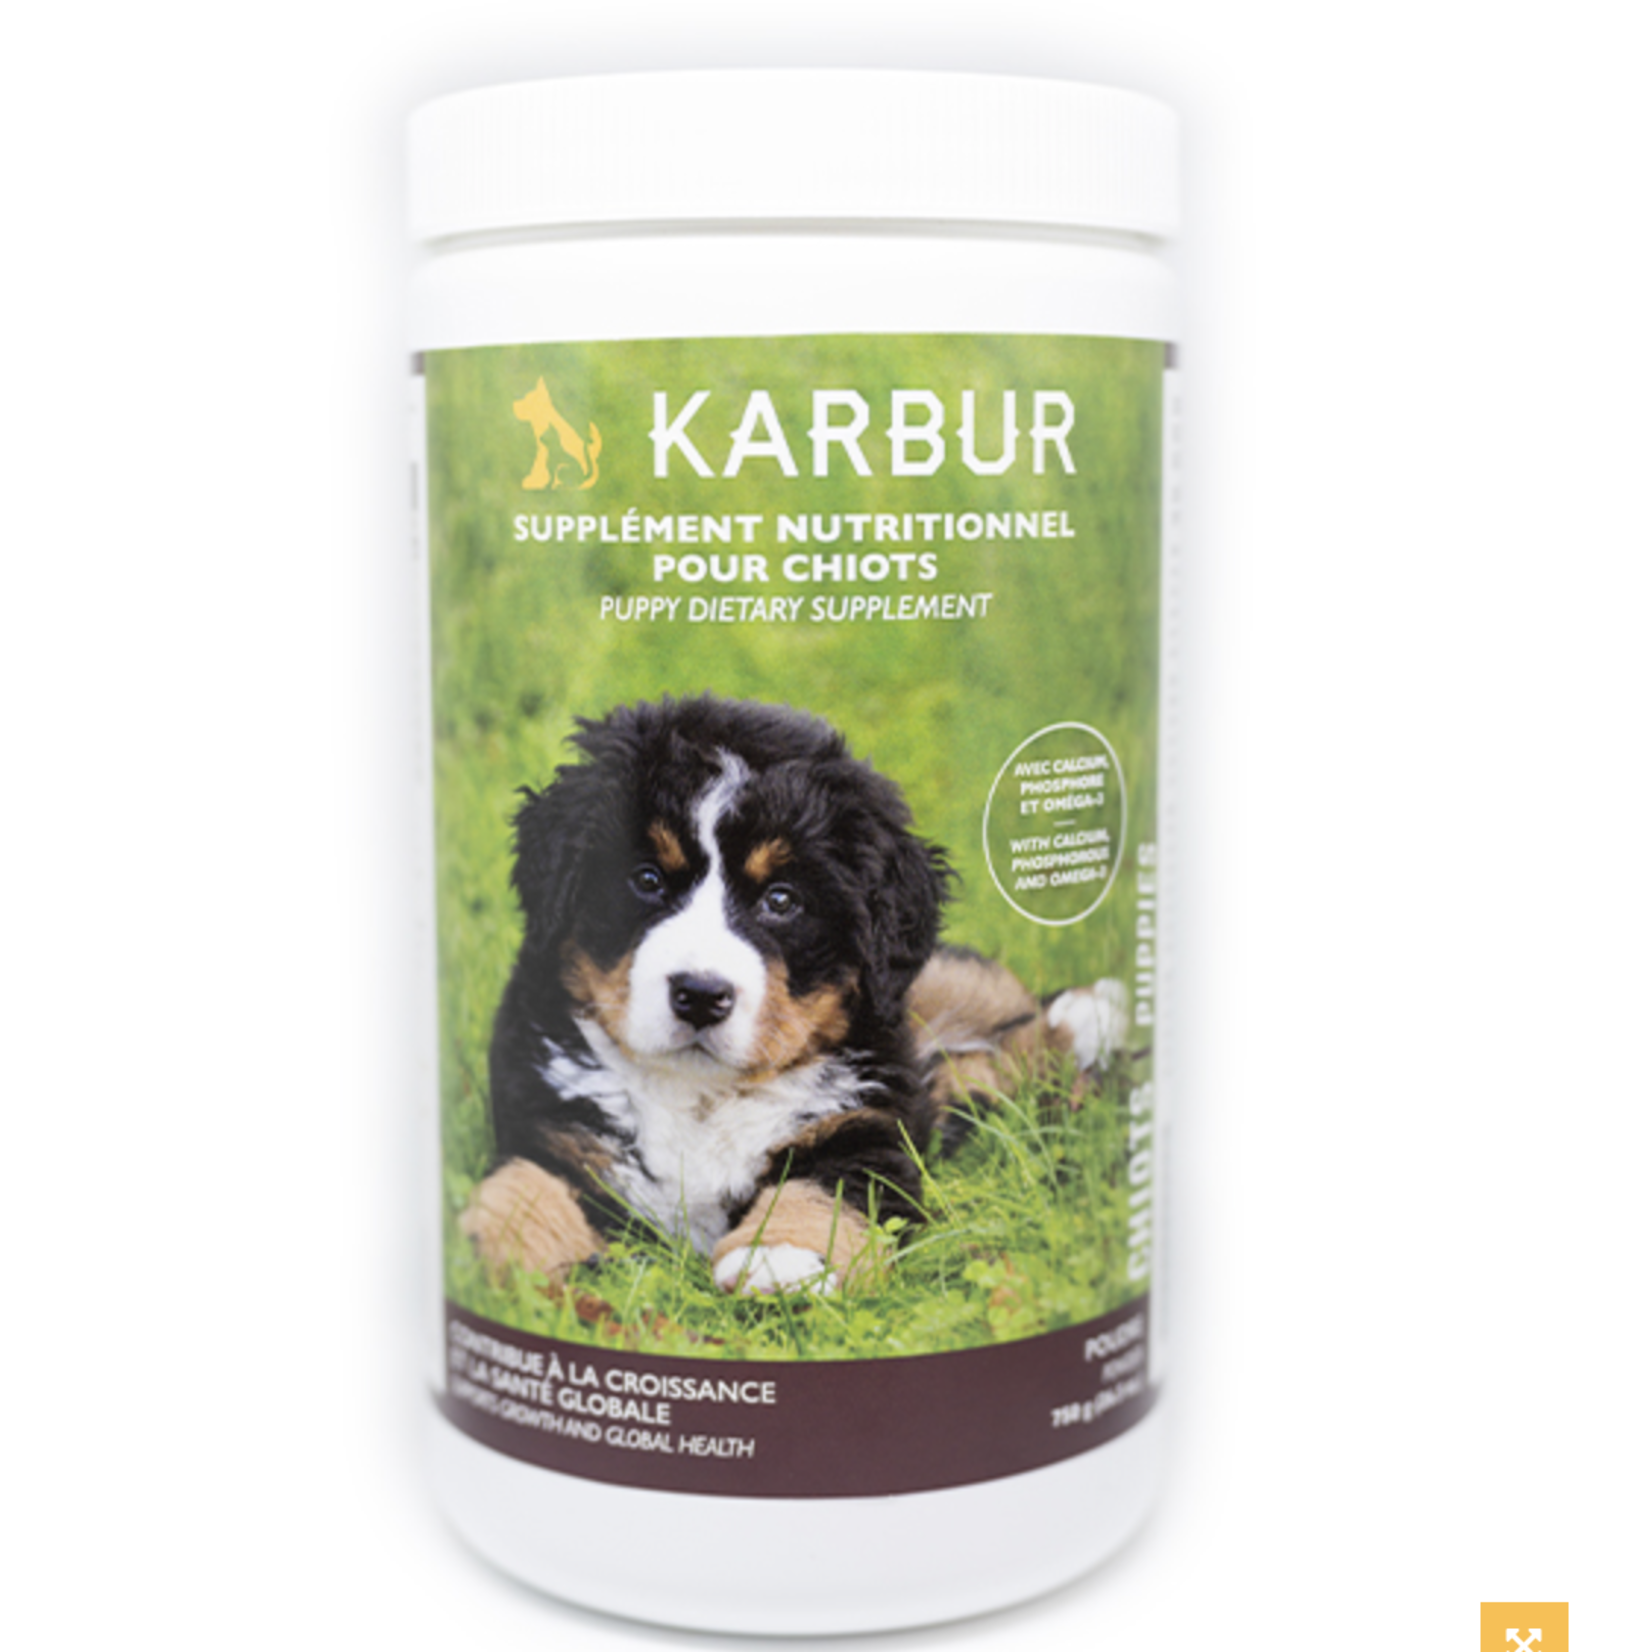 KARBUR Puppy Dietary Supplement